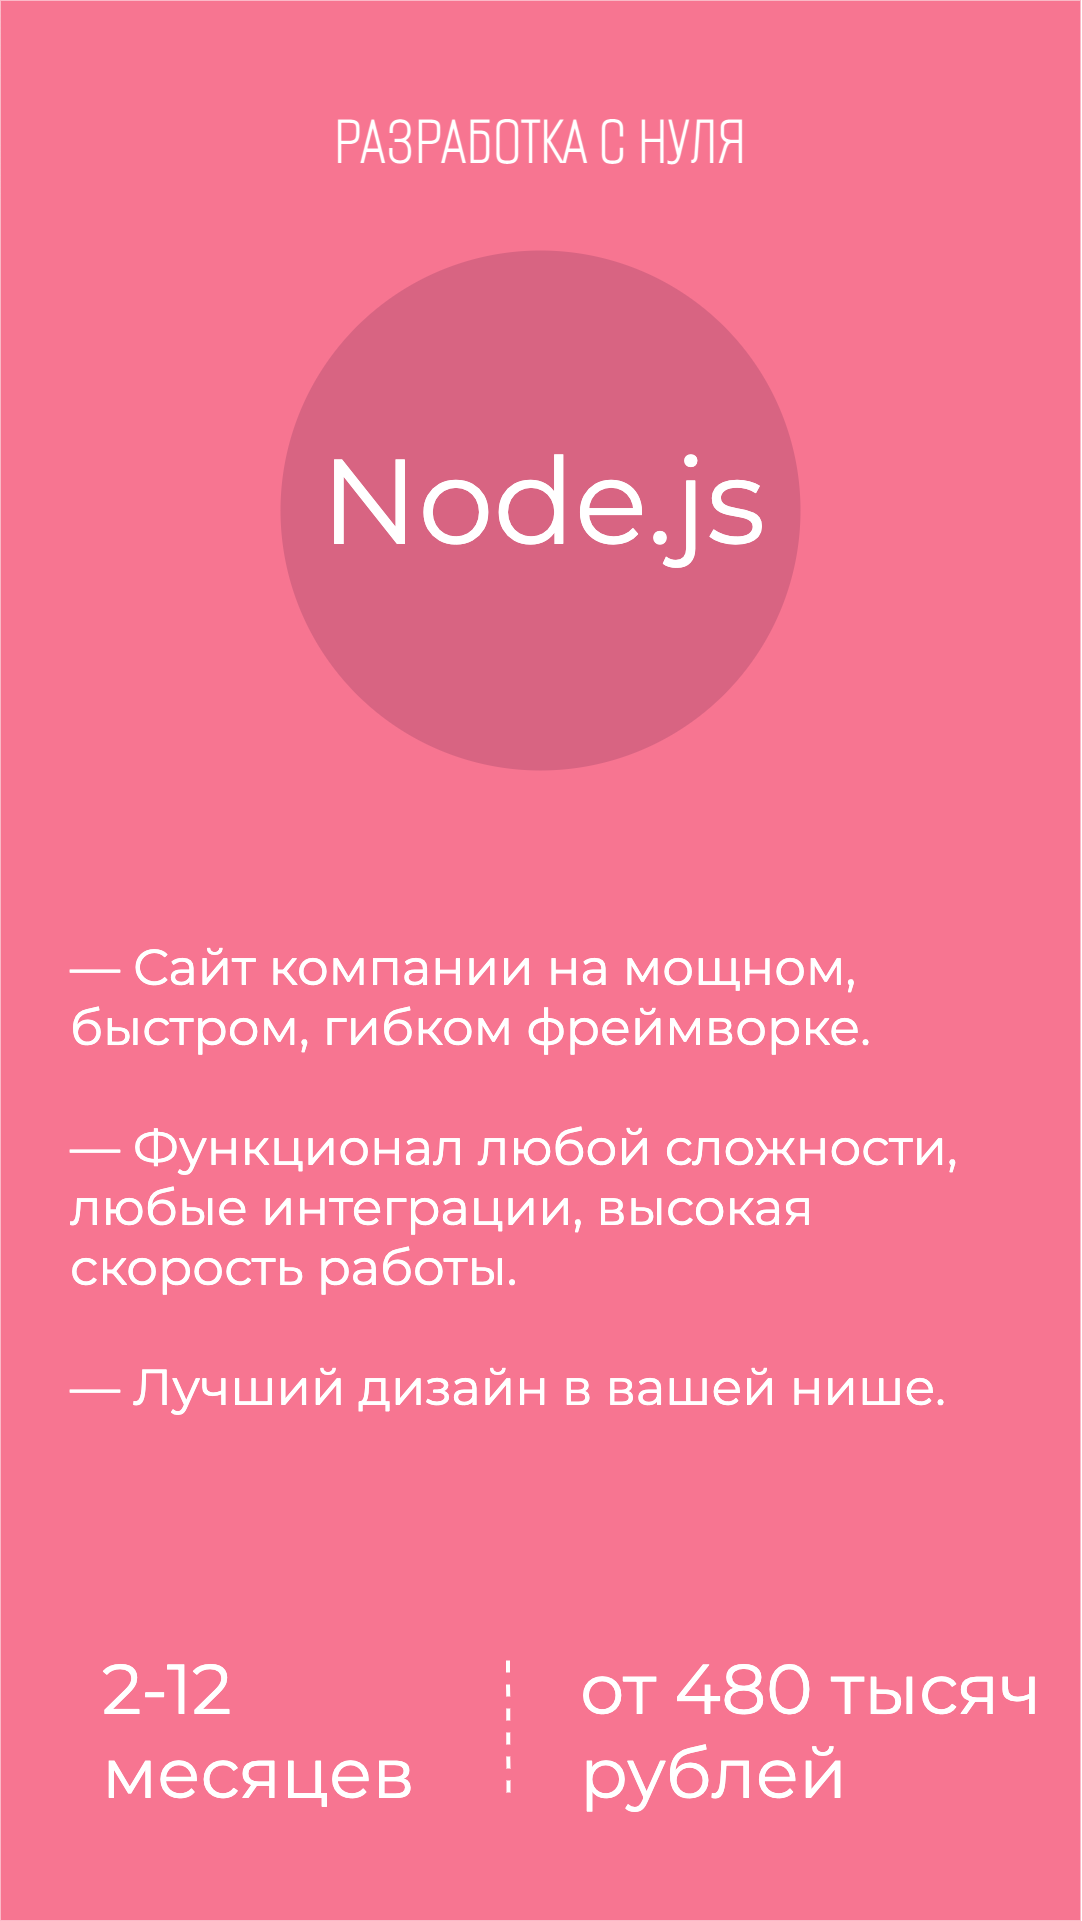 Сколько стоит создание сайта компании на Node.js